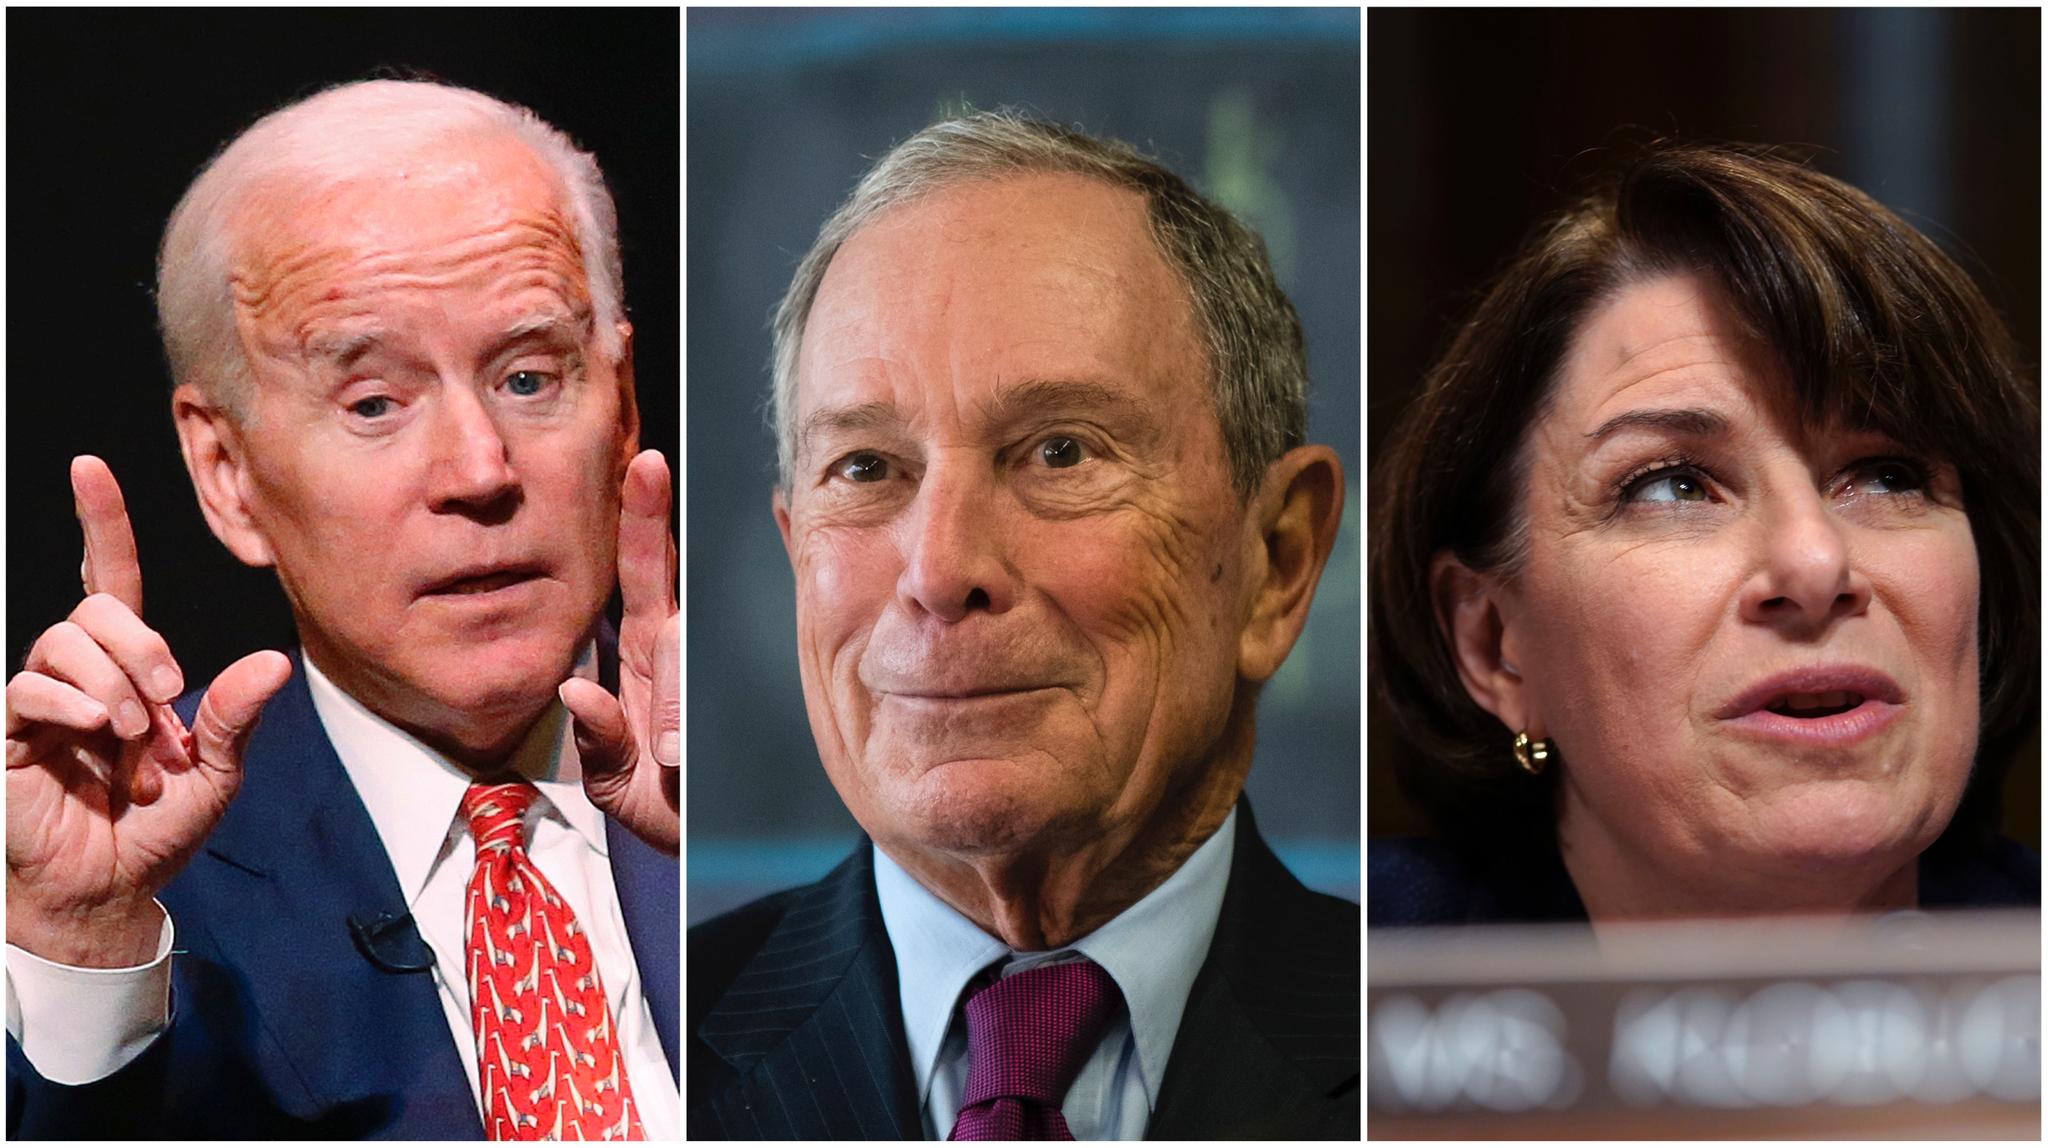 Fra venstre: Joe Biden, Michael Bloomberg, Amy Klobuchar.